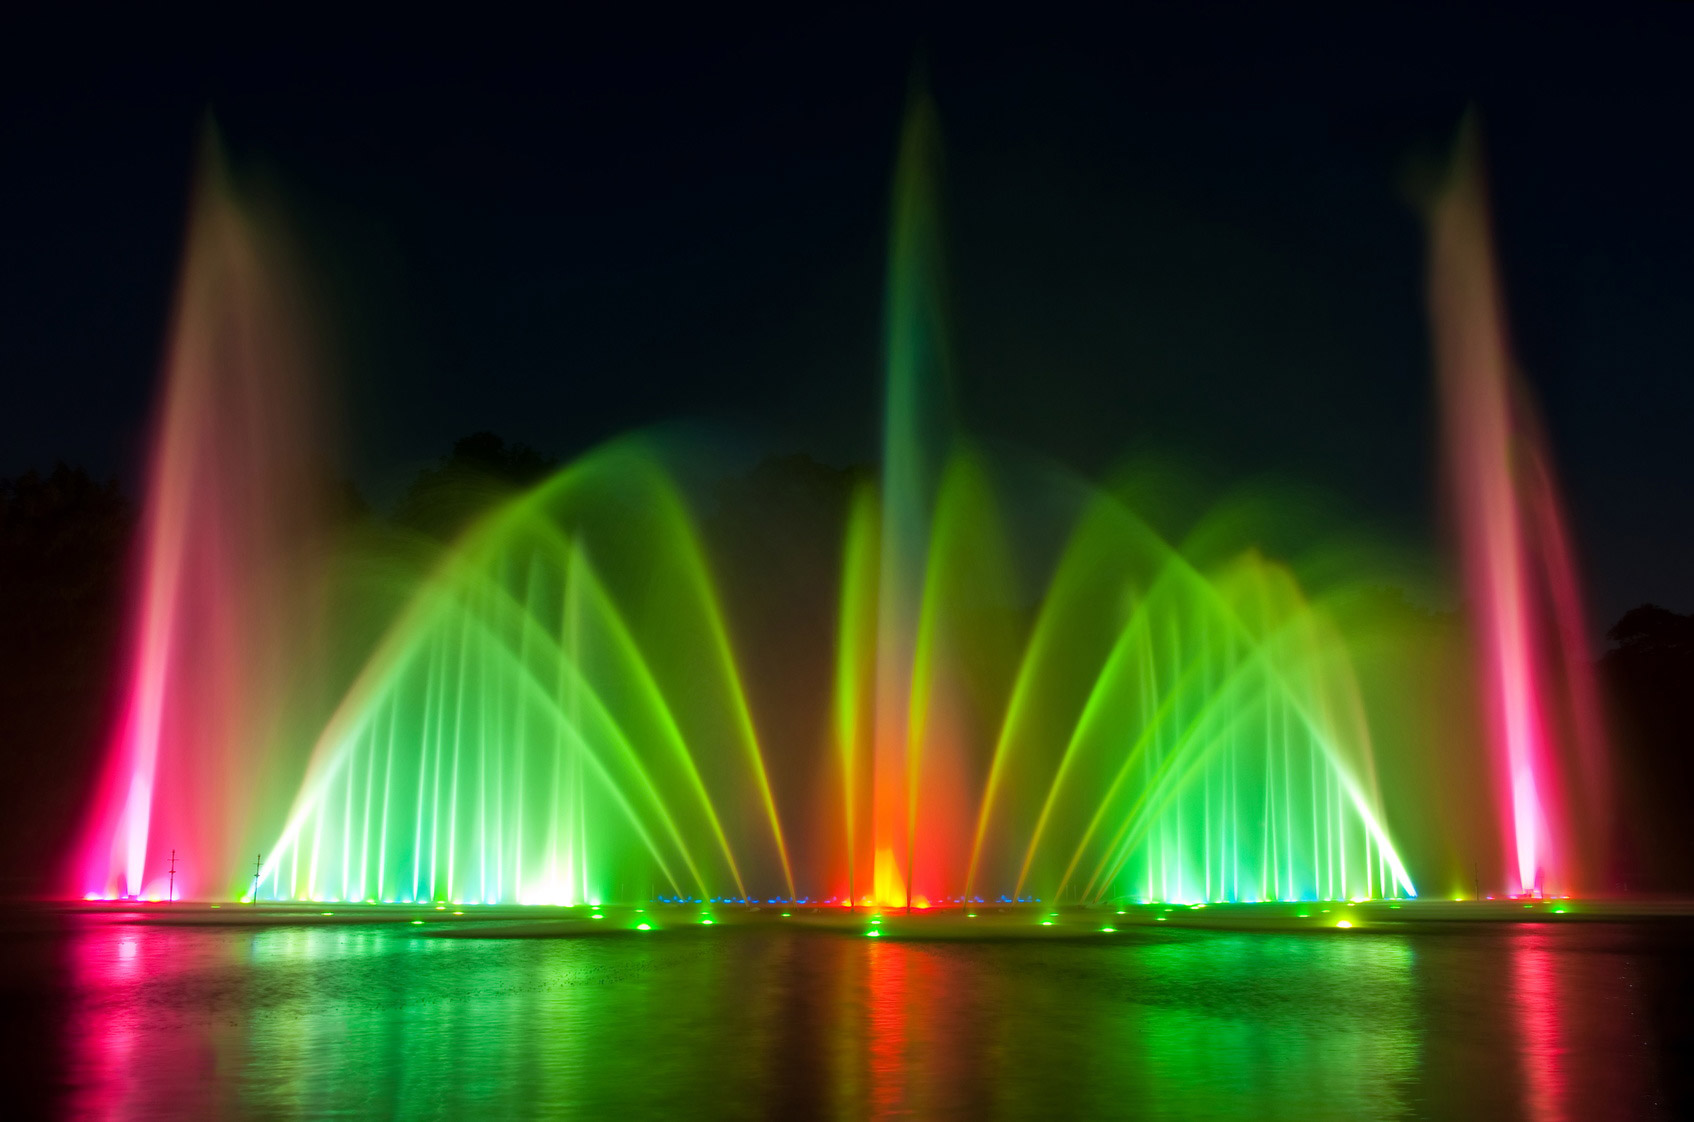 Lichtspiele im Wasser bei Nacht mit bunten LED Farben